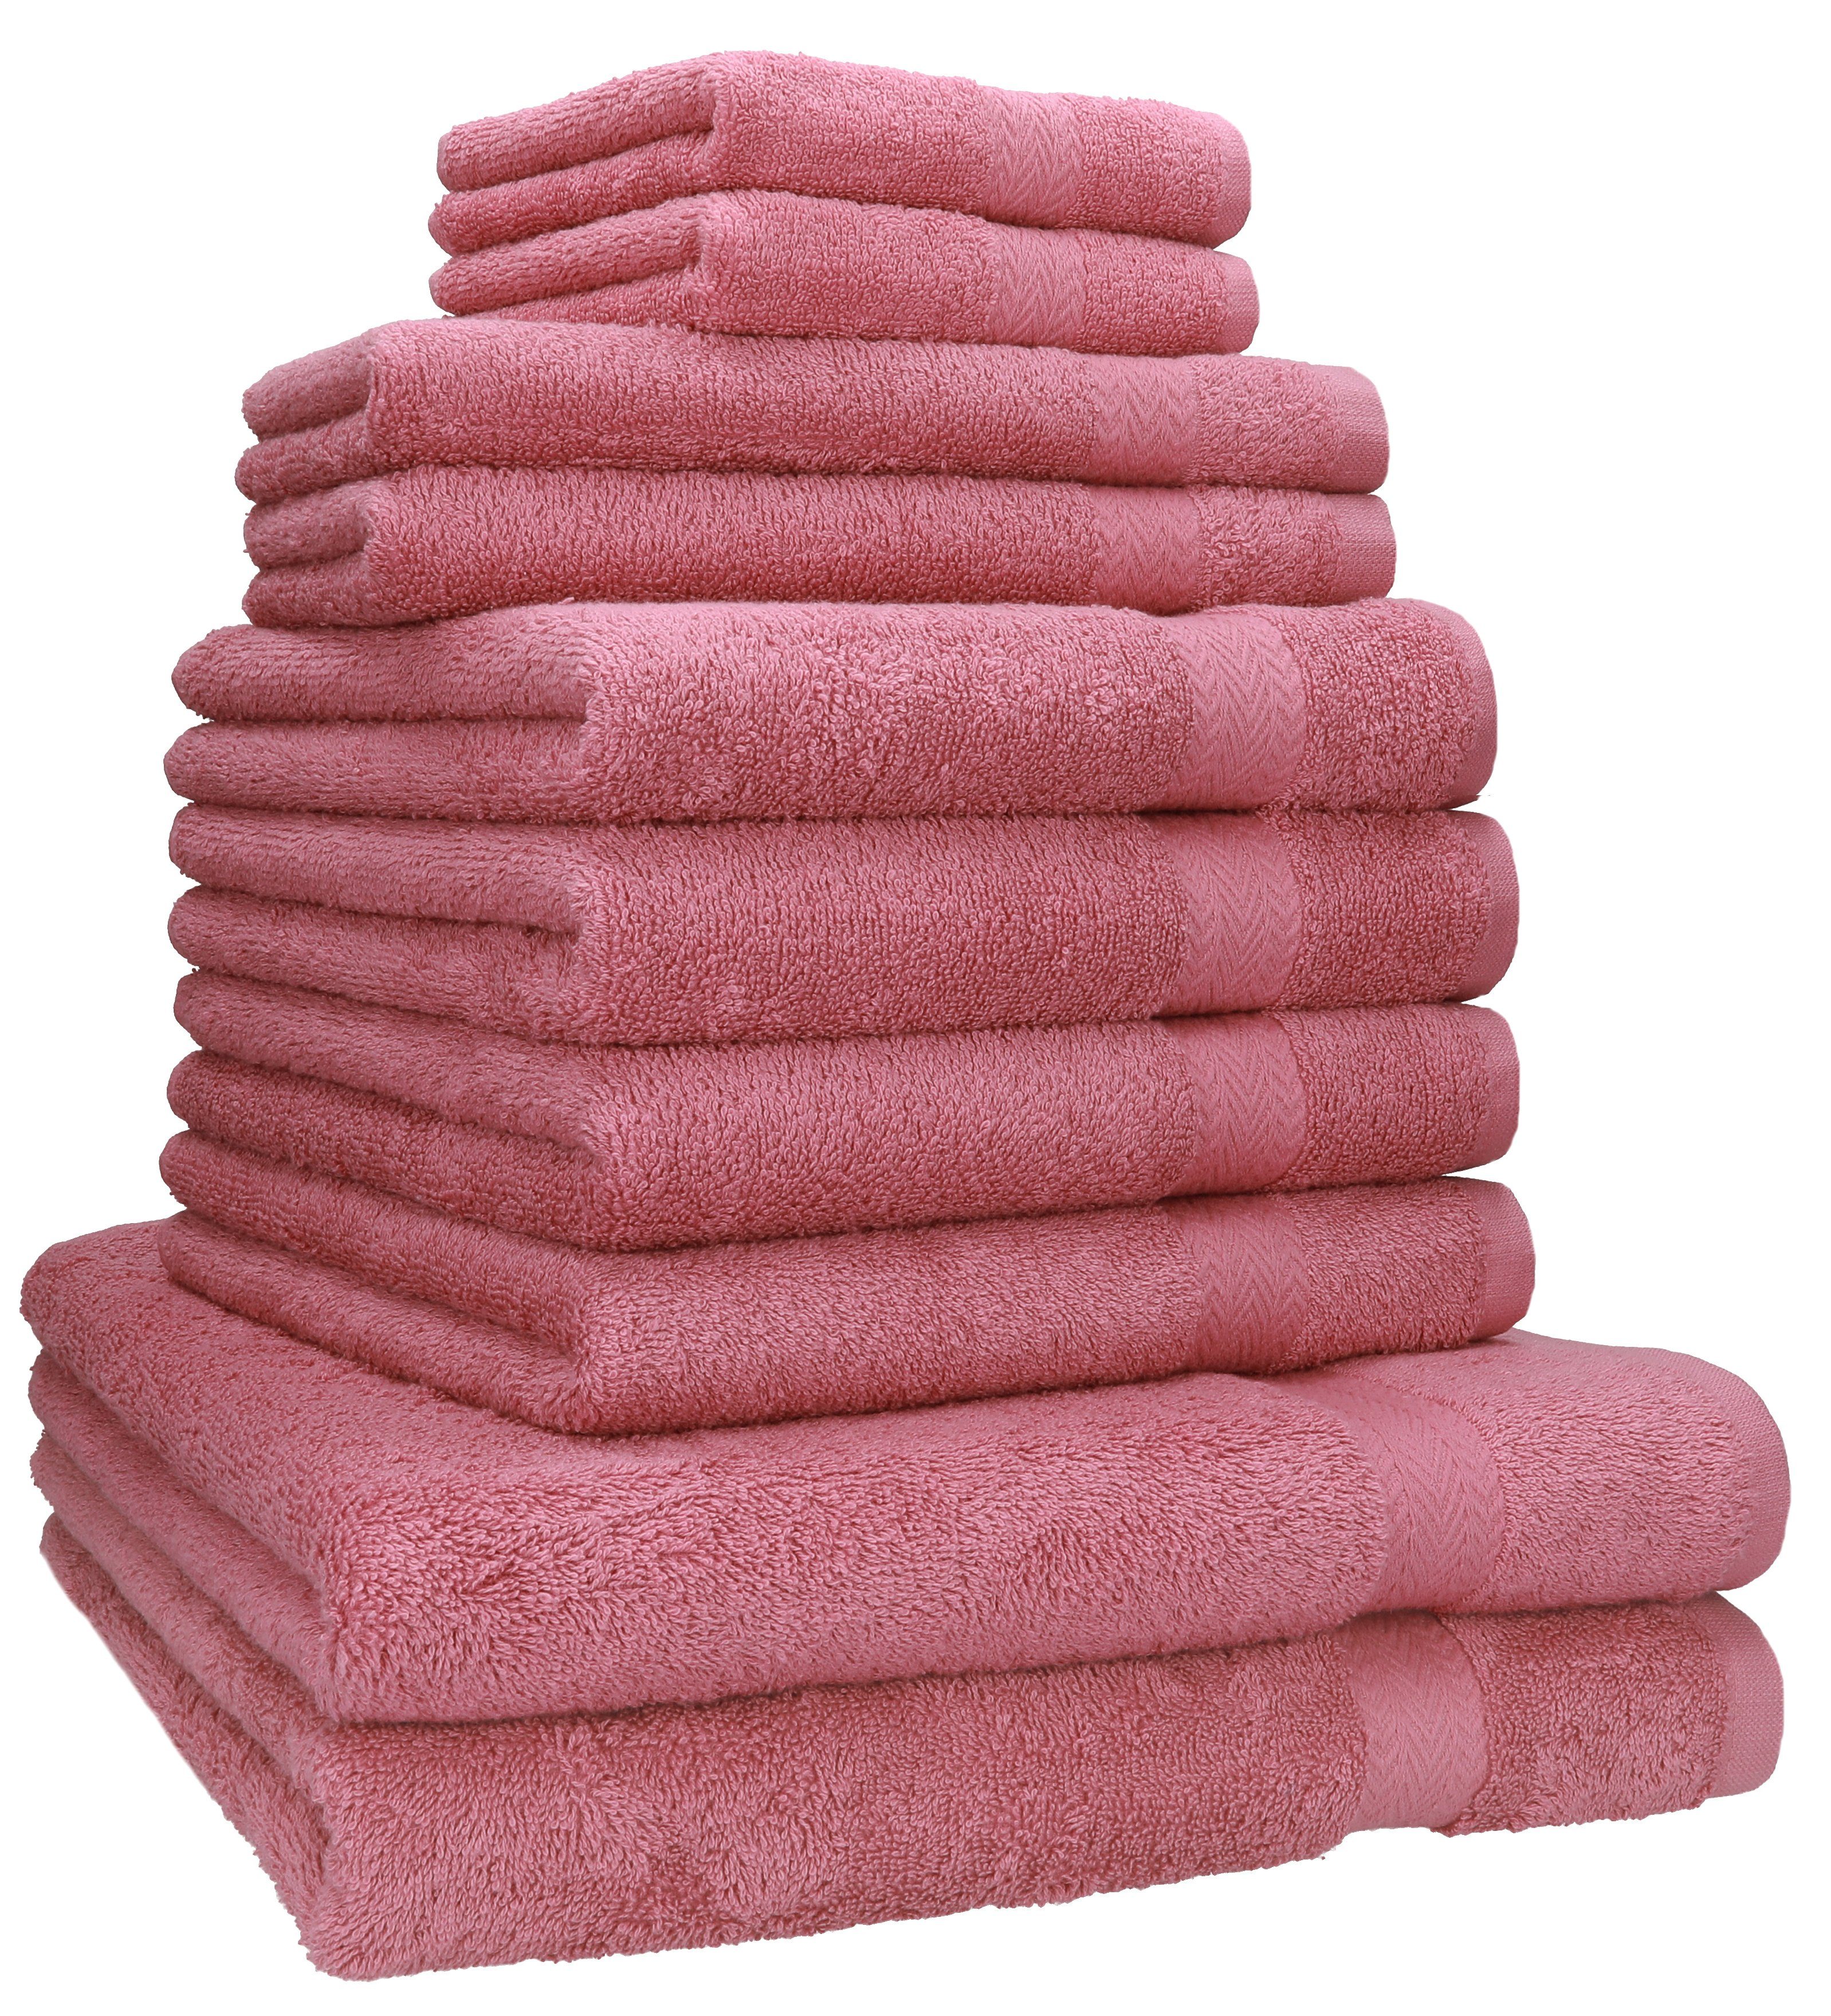 (10-tlg) Classic Baumwolle 100% Duschtücher Set Gästetücher altrosa Handtücher Handtuch 2 2 4 10-TLG. Baumwolle, Betz Seiftücher, 2 100% Handtuch-Set